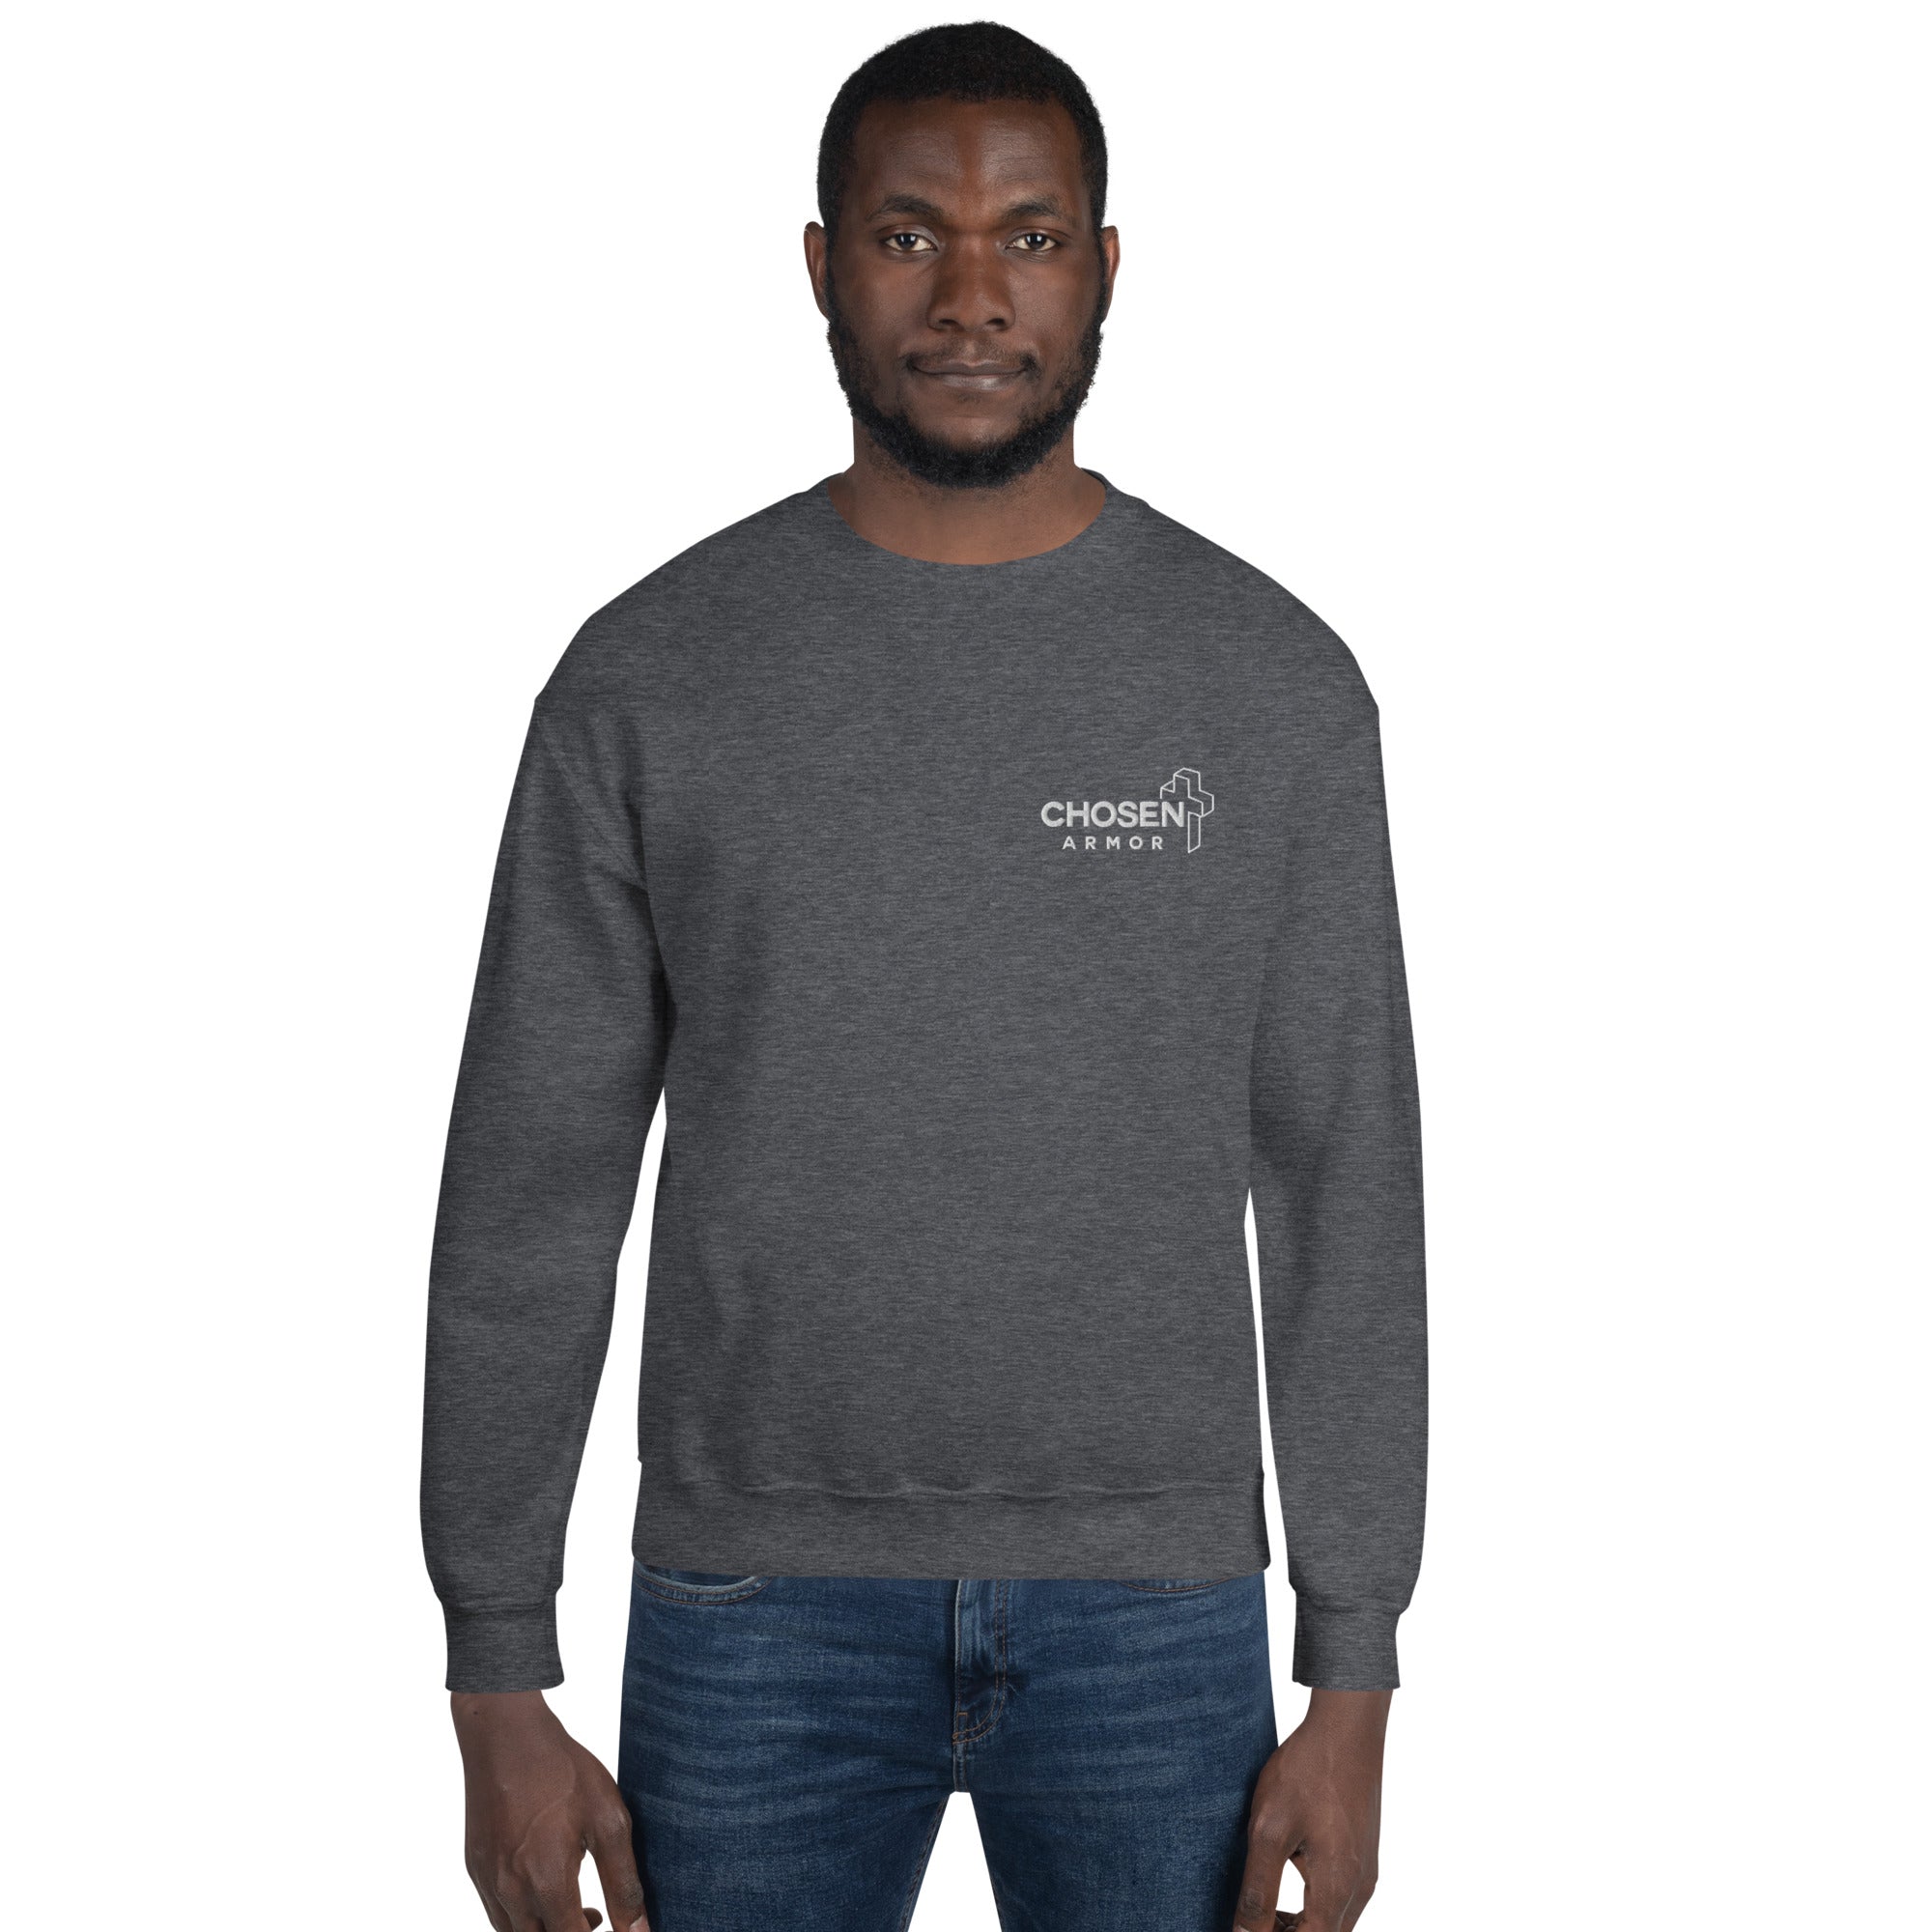 Lion of Judah | Crew Neck | Unisex Sweatshirt